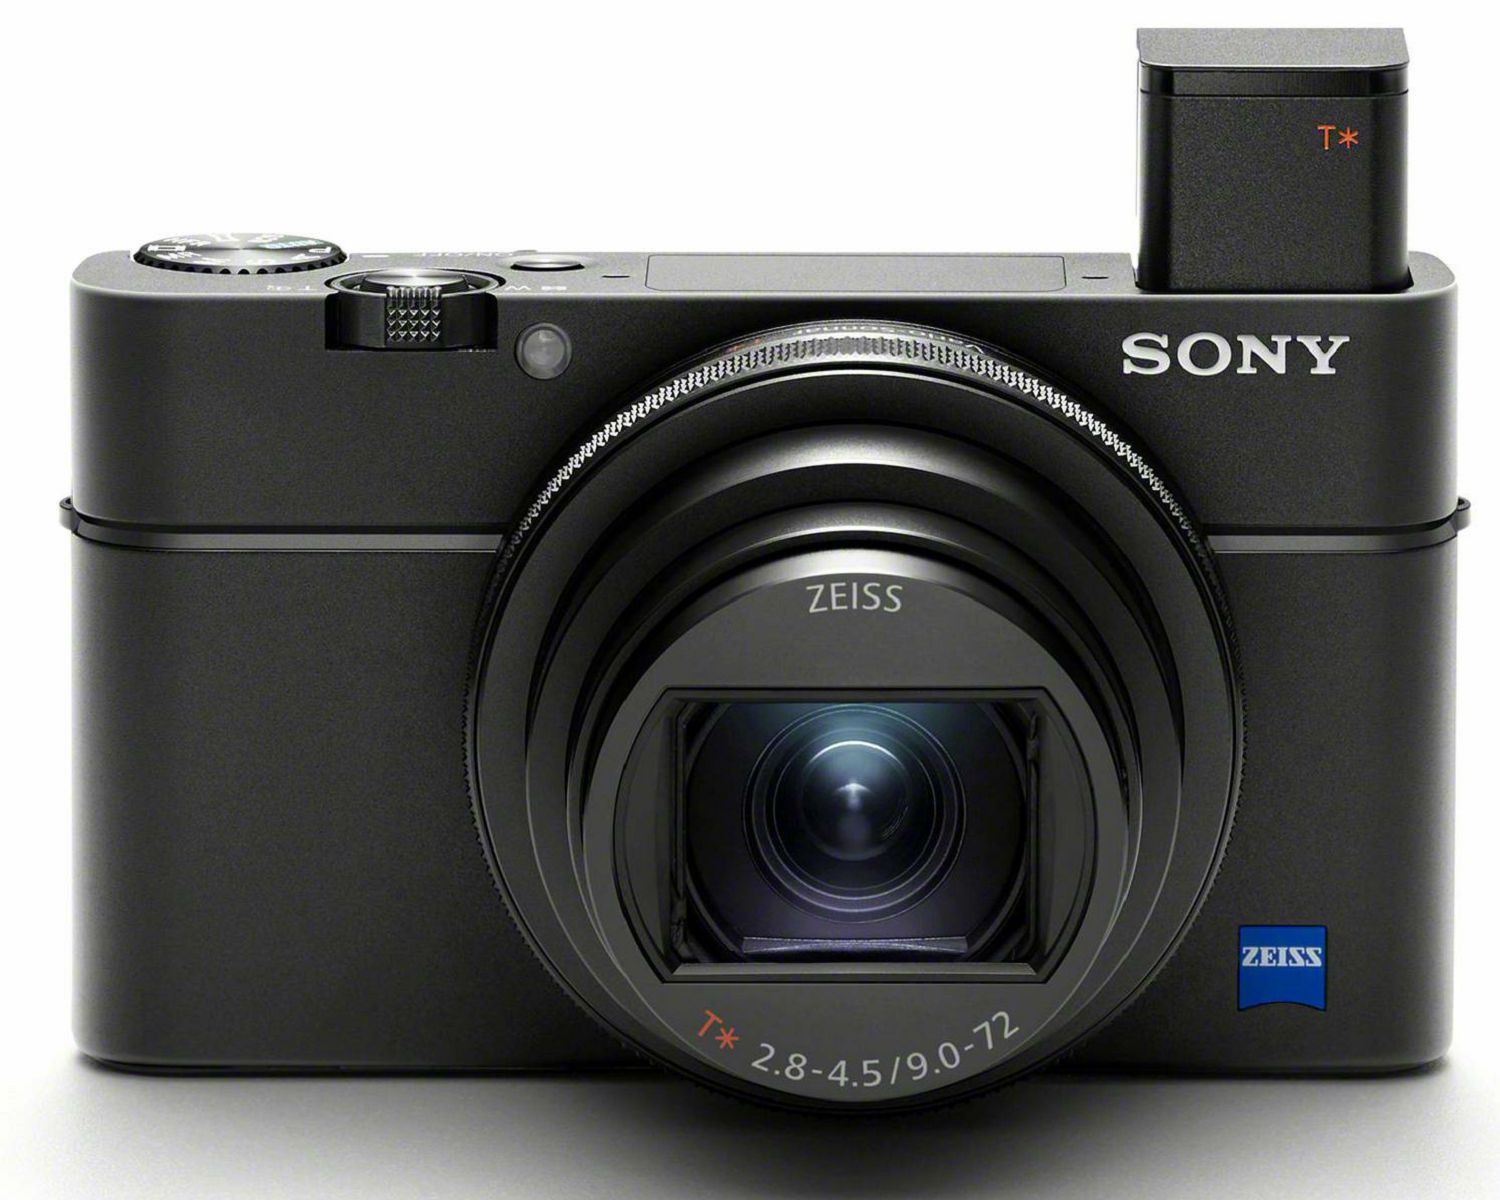 Sony Cyber-shot DSC-RX100 M7 Black crni Digitalni fotoaparat s integriranim objektivom Carl Zeiss Vario-Sonnar T* 9-72mm f/2.8-4.5 Digital Camera (DSCRX100M7.CE3)